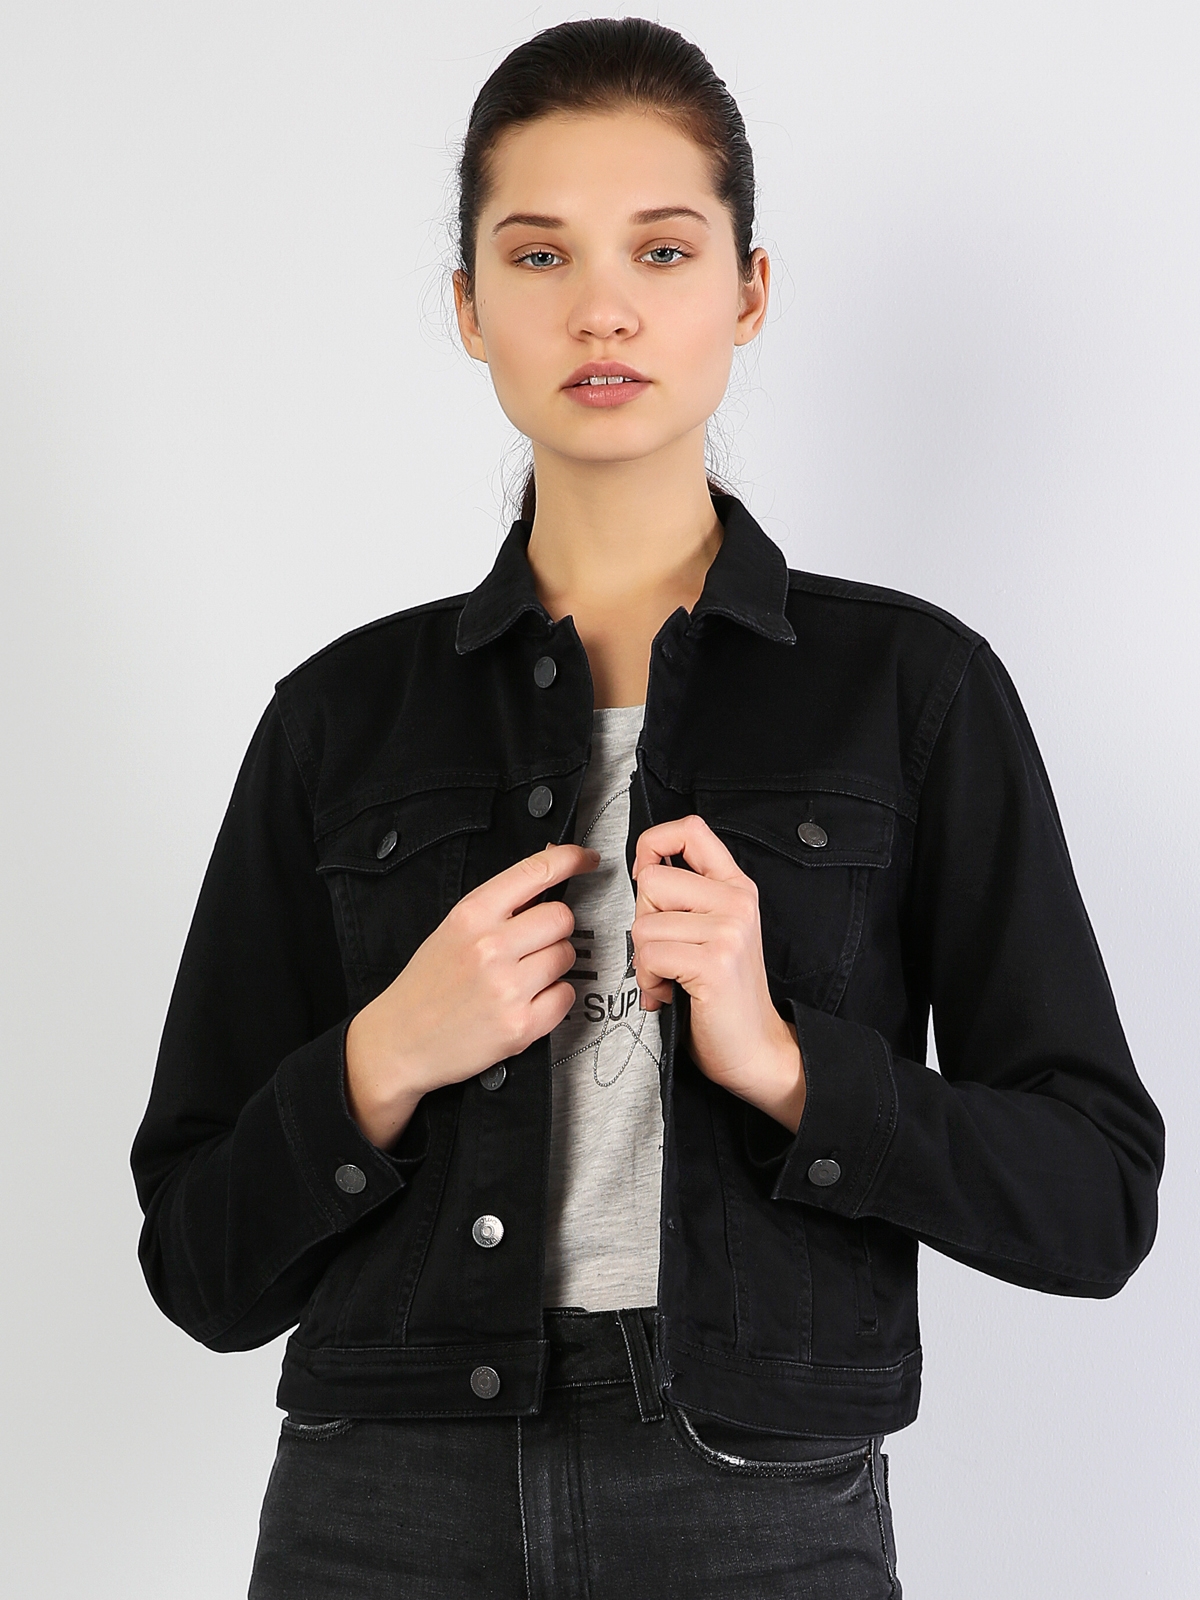 Siyah Dar Kesim Kadın Jean Ceket